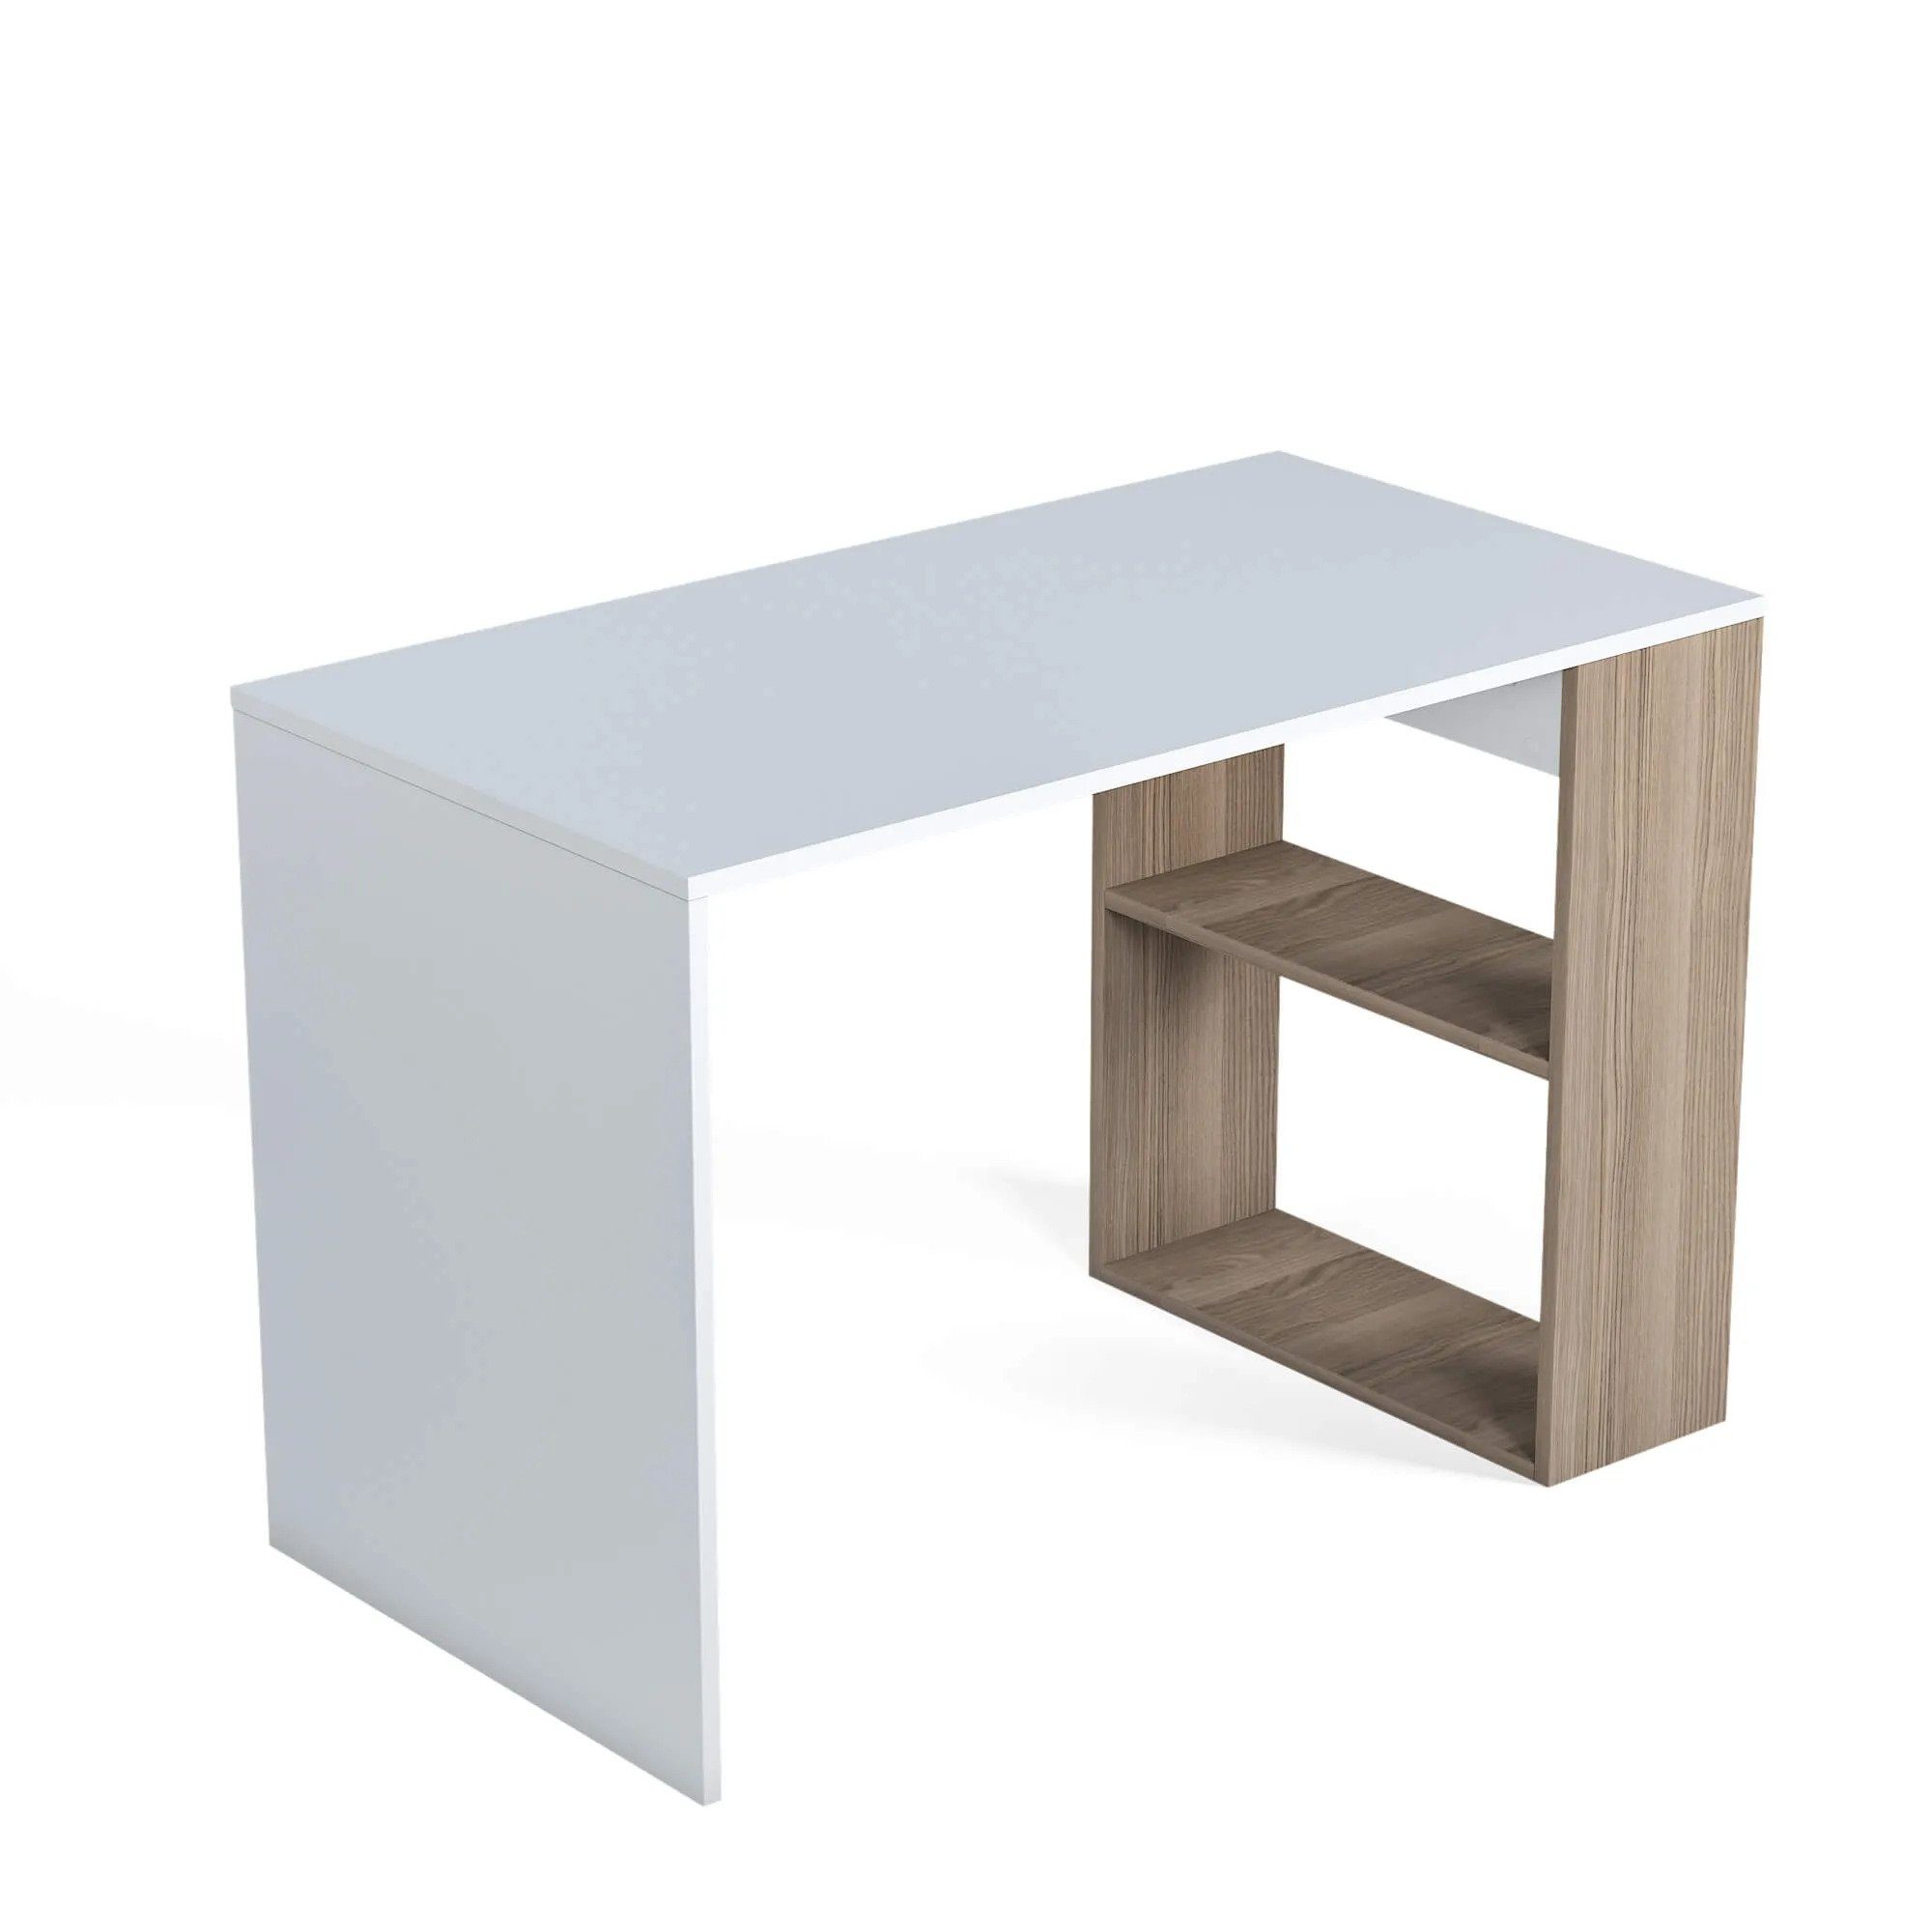 Minimadecor Schreibtisch Minimadecor Schreibtisch & Deserto weiß x76cm 110cm weiß/braun x60cm